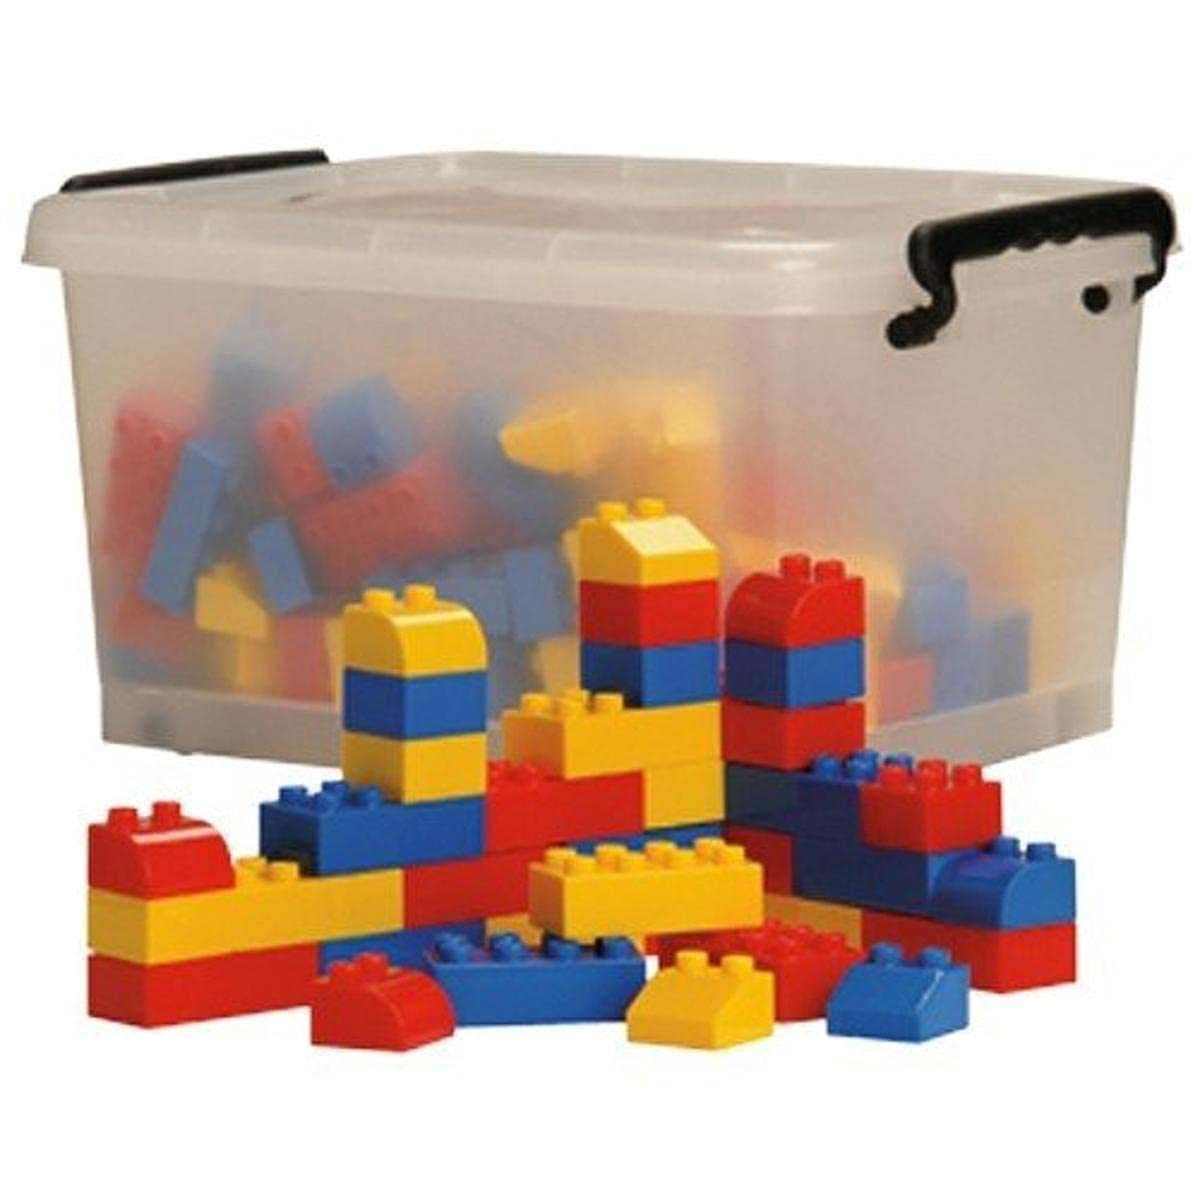 Constructive Playthings ATC-05 Preschool Building Bricks with Storage Tub, Grade: Kindergarten to 3, 150 Pieces